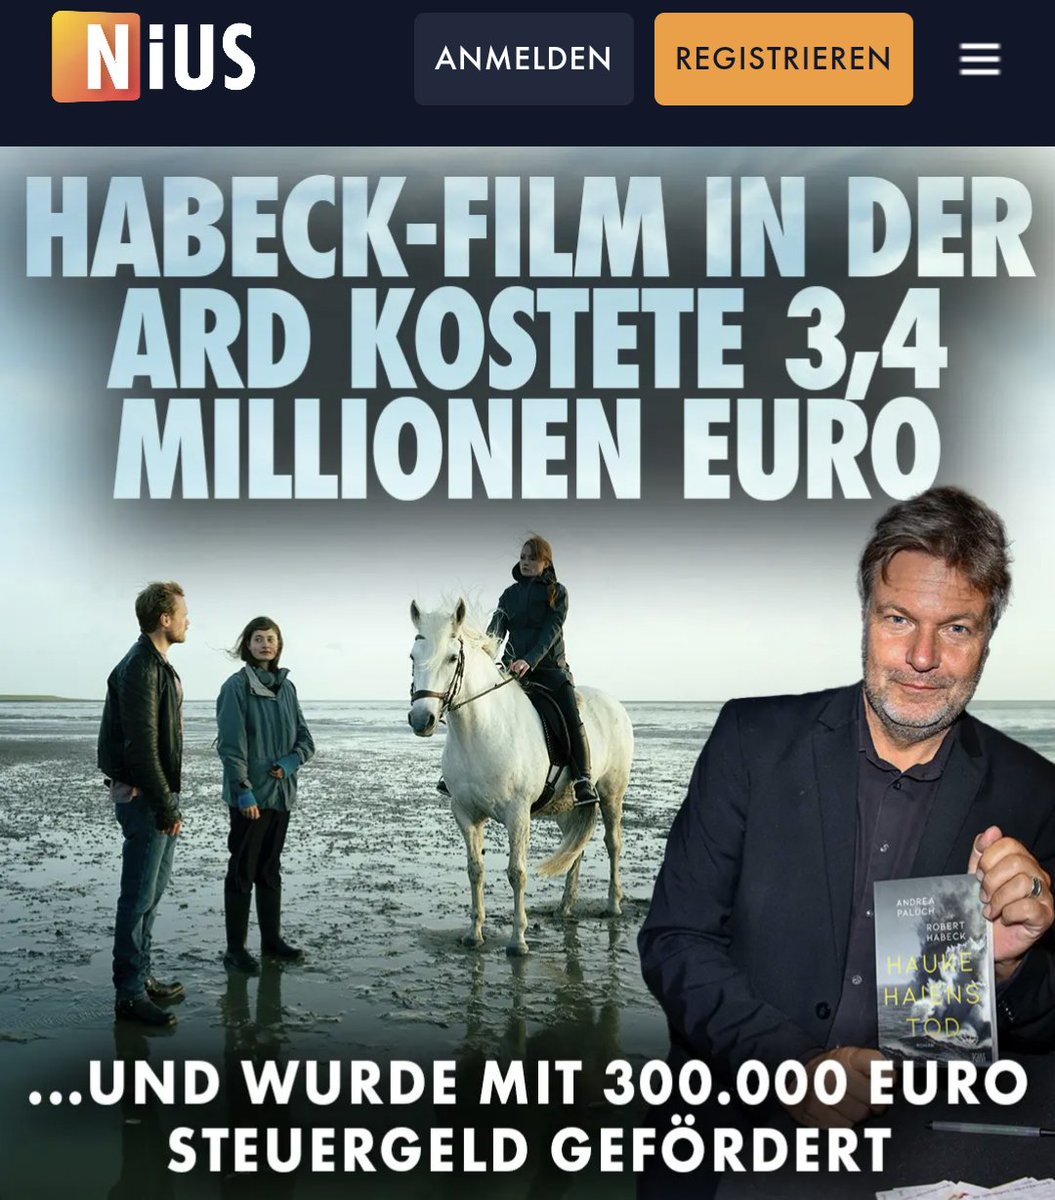 Geschmeidige 3,4 Millionen Euro hat Habecks Propagandafilm in der ARD die Gebühren- und Steuerzahler gekostet. nius.de/news/erst-fuen…